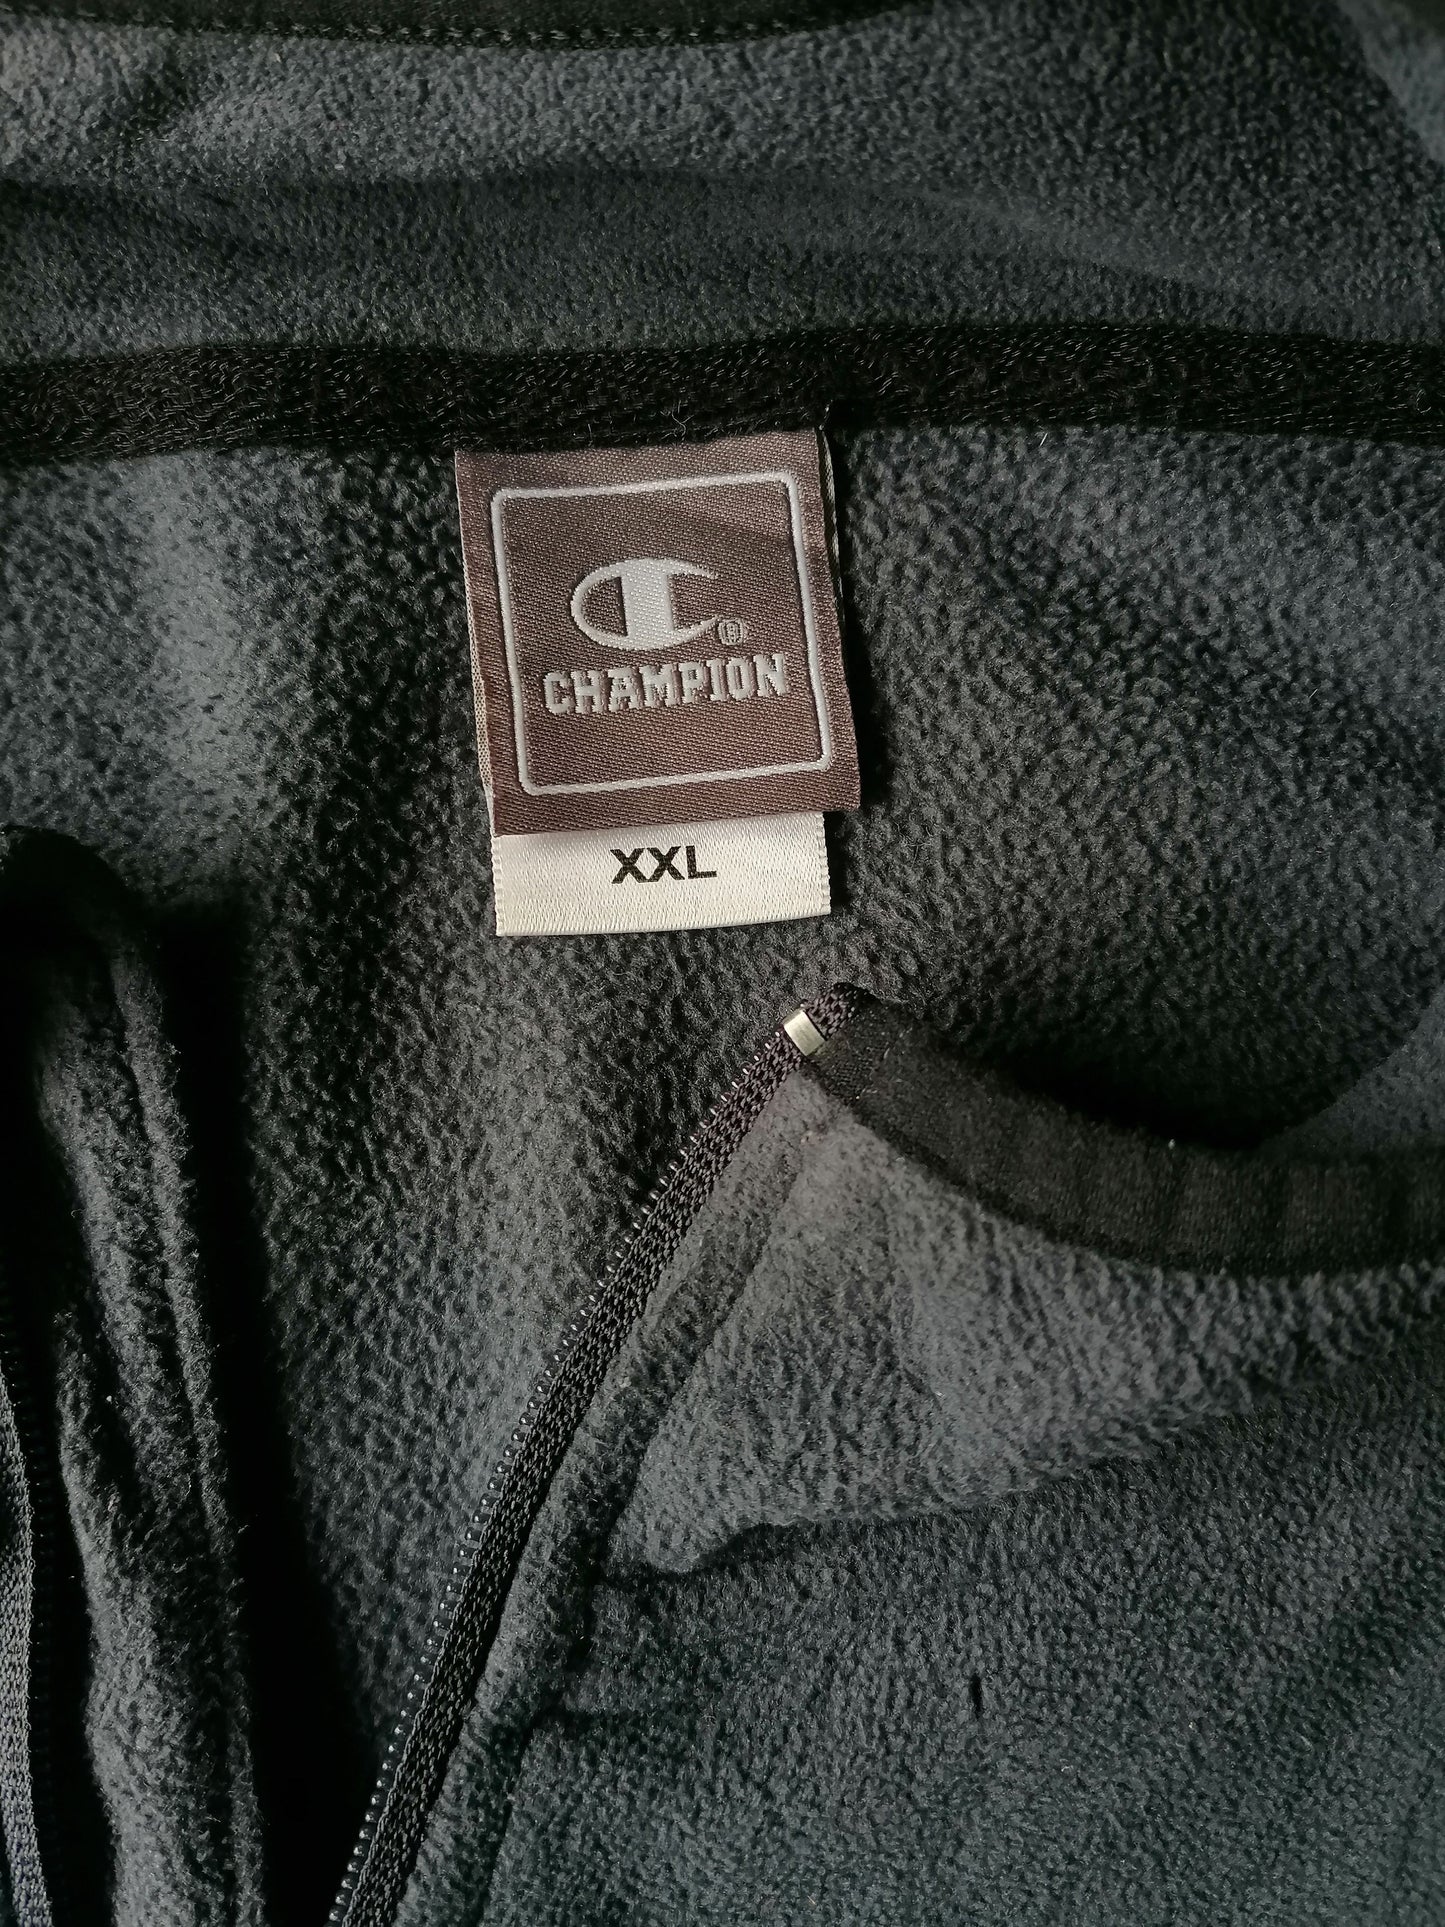 B Auswahl: Vintage Champion Vlece -Pullover mit Reißverschluss. Grau. Größe xxl. Kleines Loch vorne.